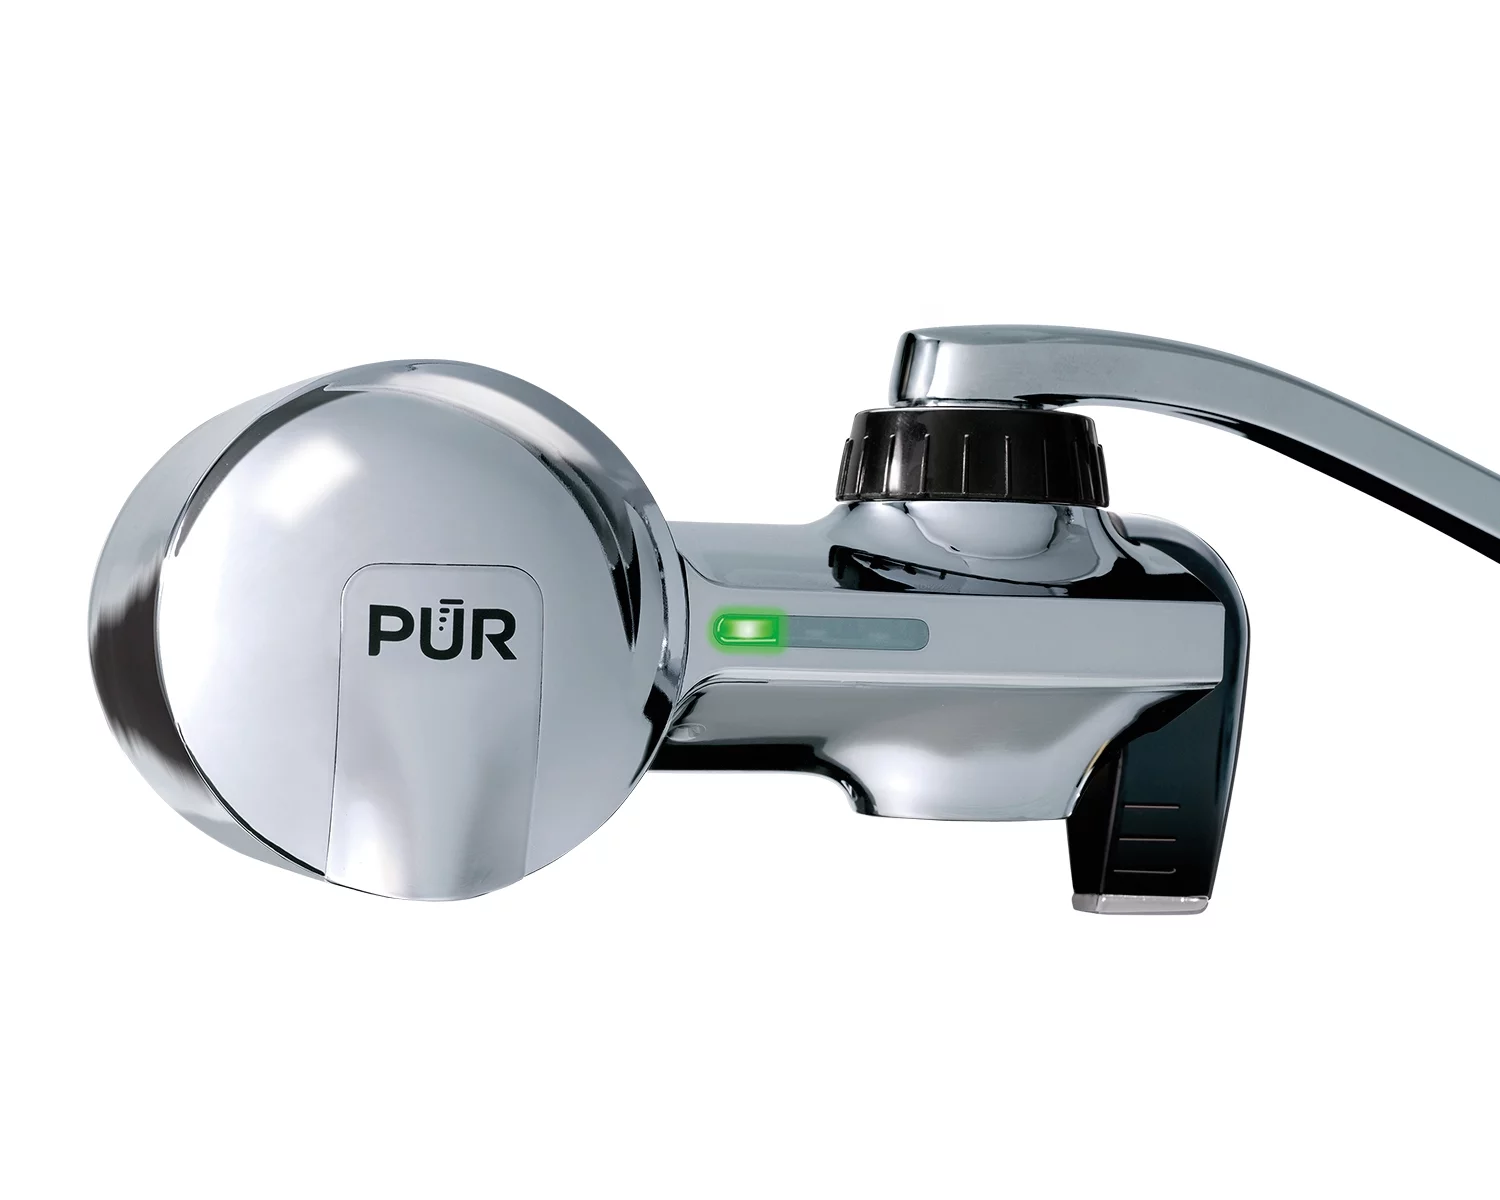 PUR PLUS Faucet Mount Water Filtration System, Chrome, PFM400H